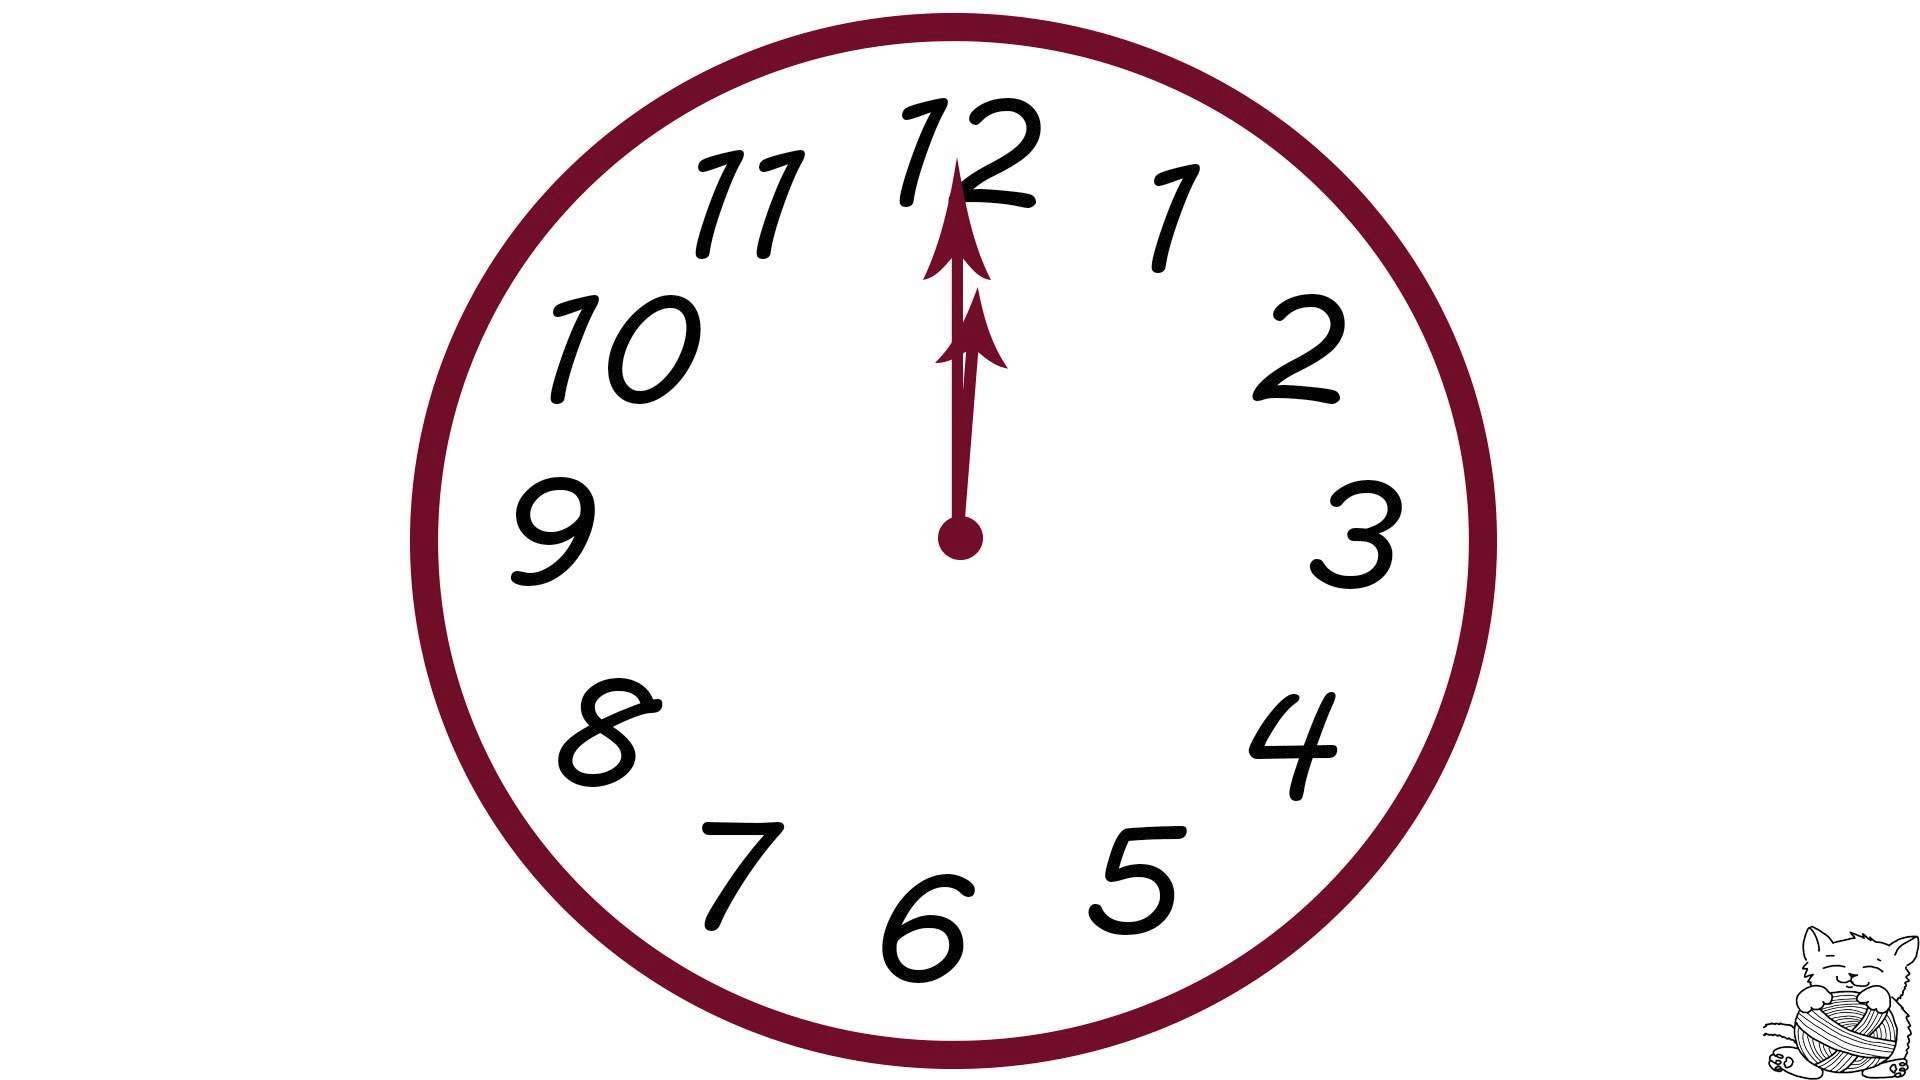 Картинка часы 12. Циферблат для настенных часов. Циферблат полночь. Изображение часов со стрелками для детей. Часы показывают 12 часов.